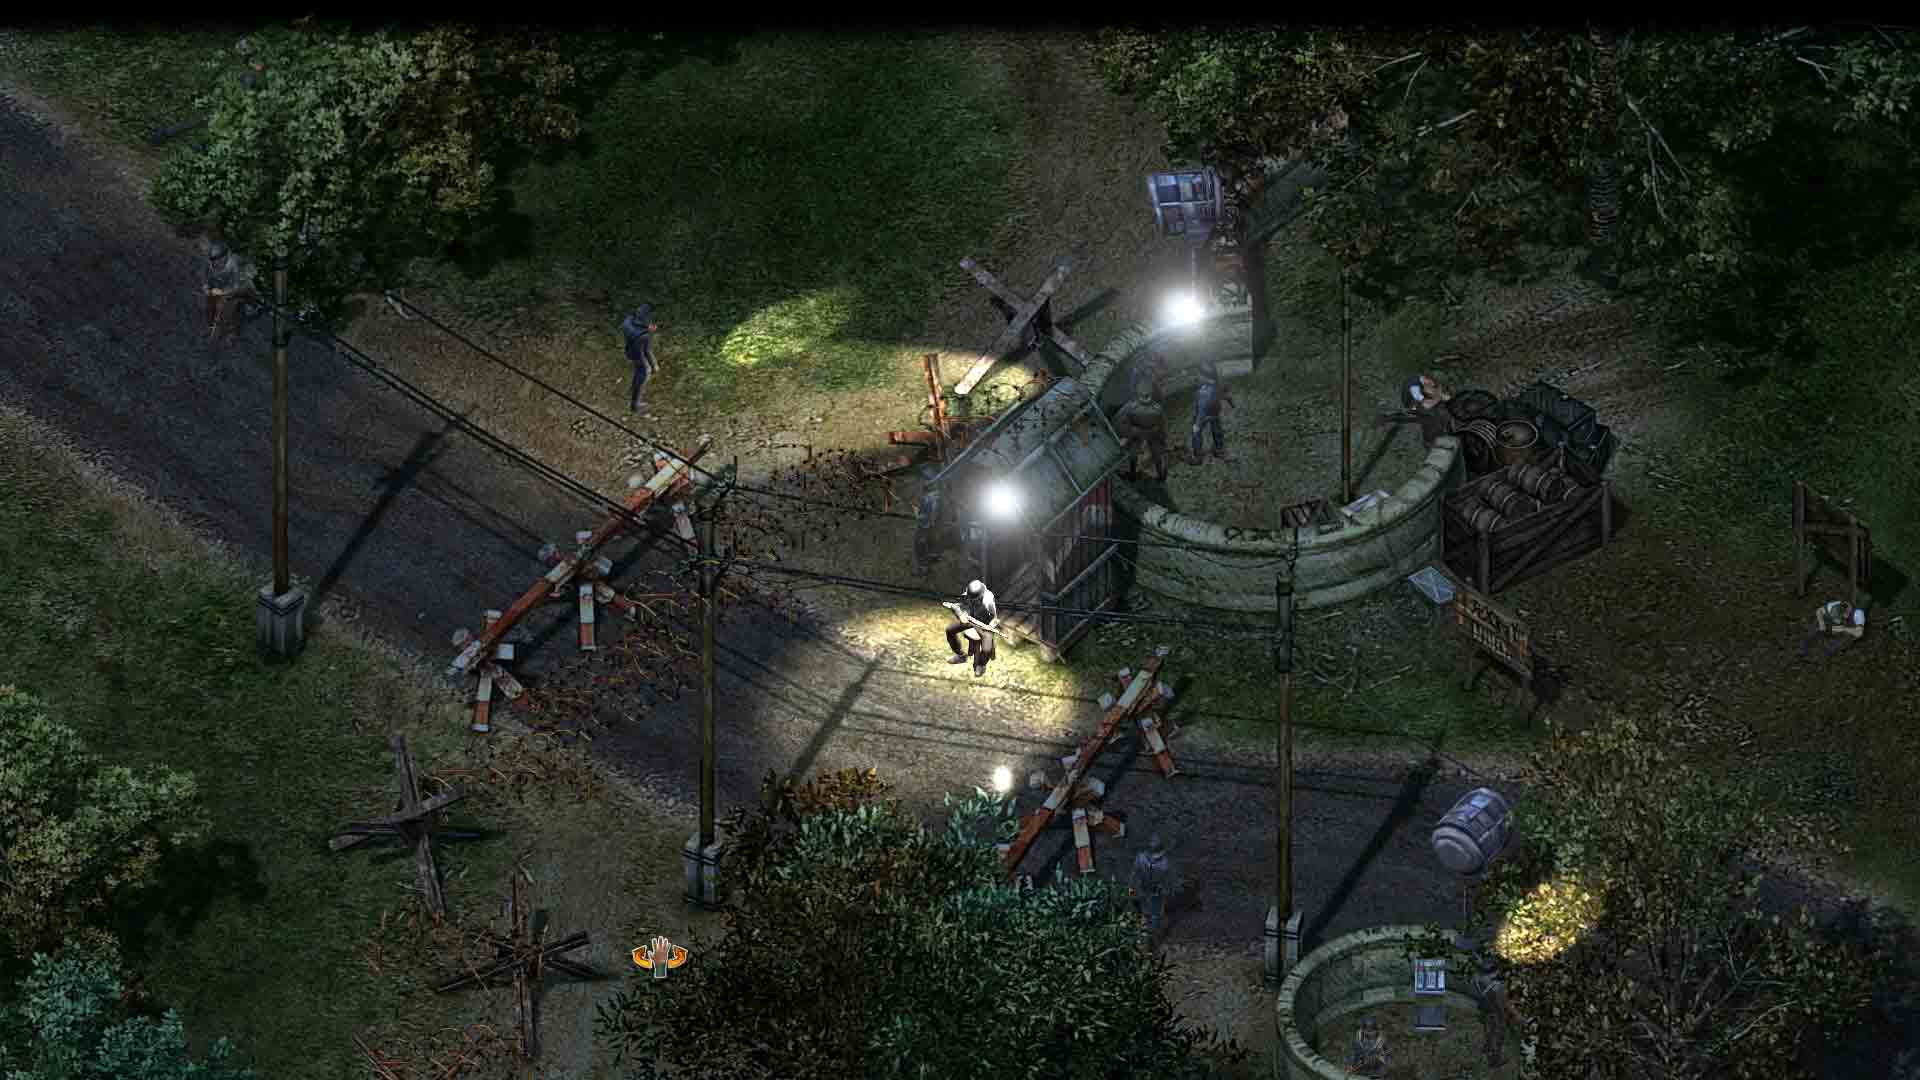 instal Commandos 3 - HD Remaster | DEMO